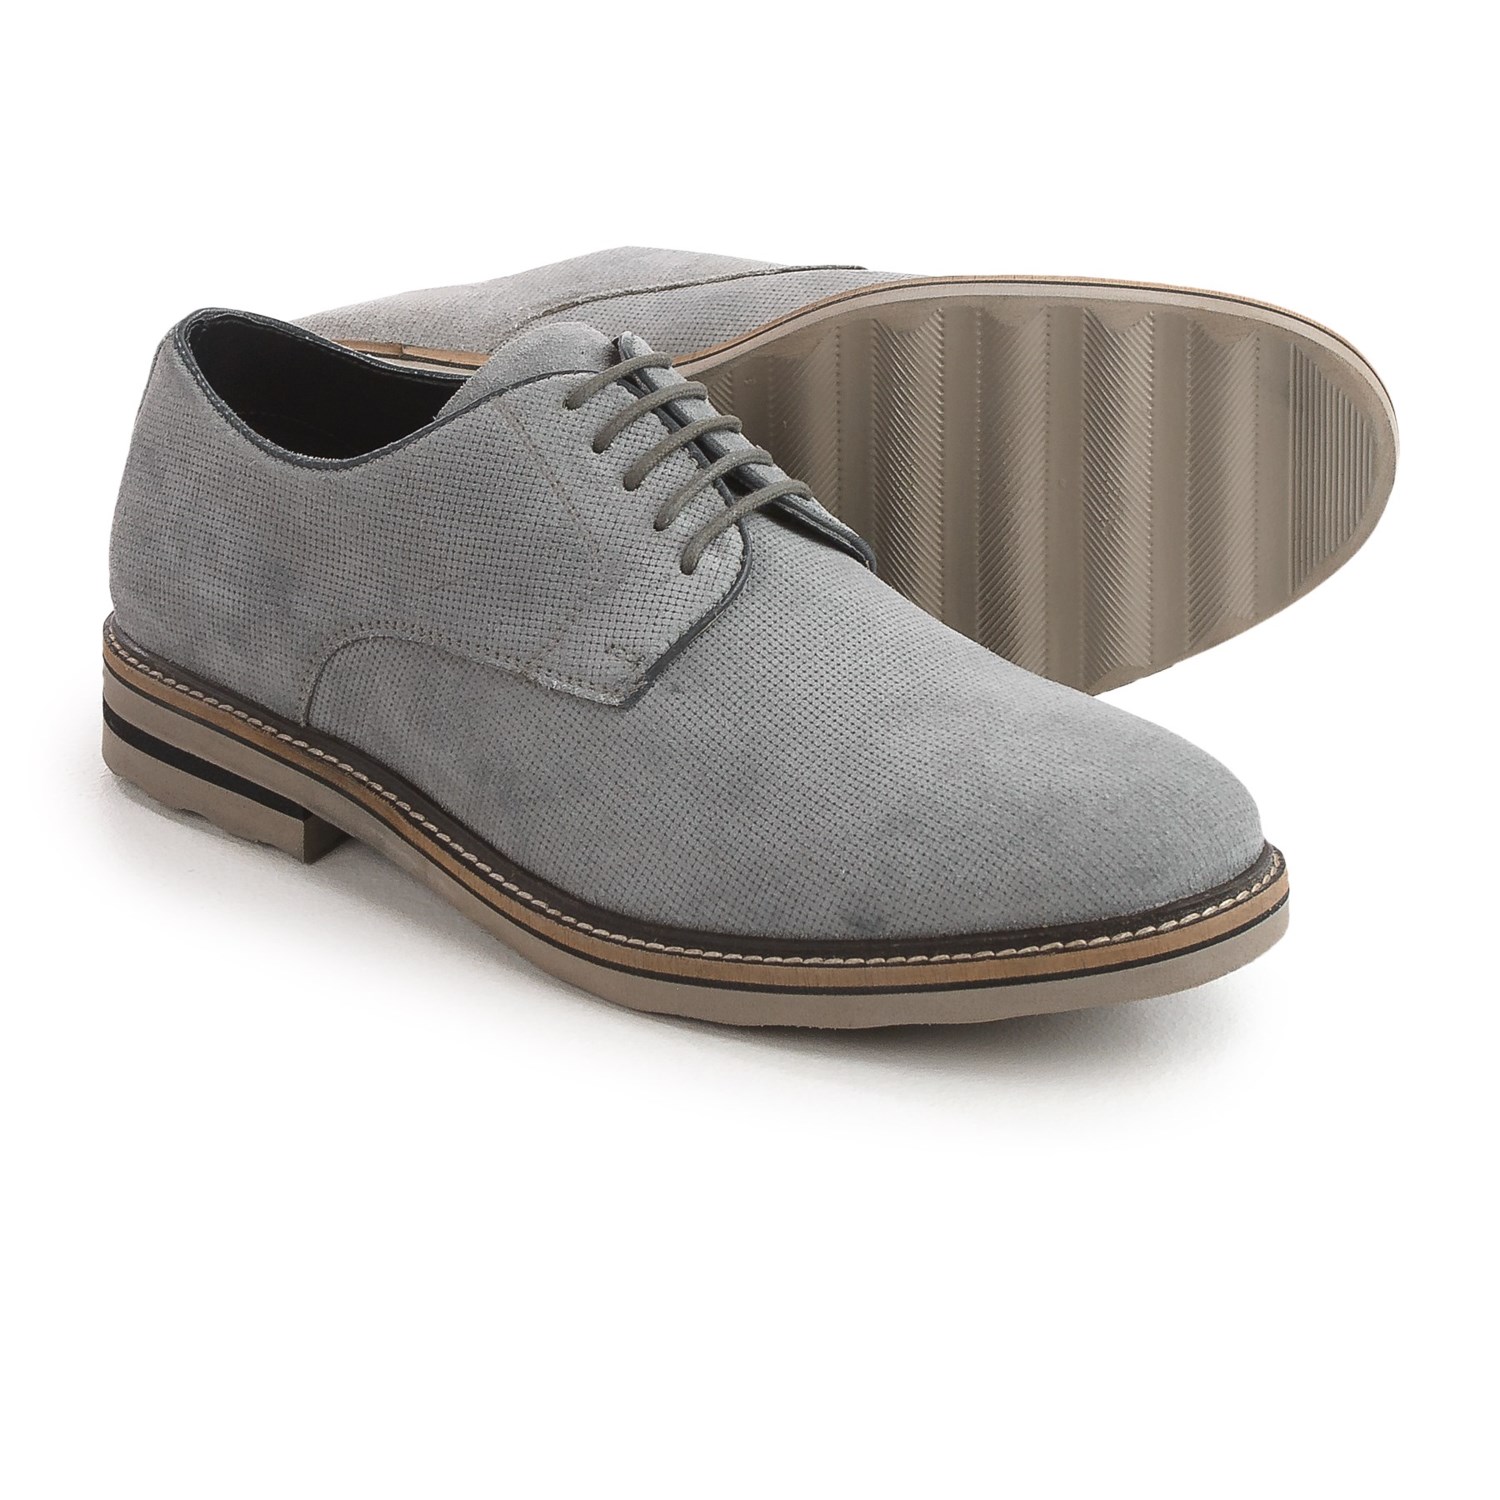 Steve Madden Horten Oxford Shoes – Suede (For Men)